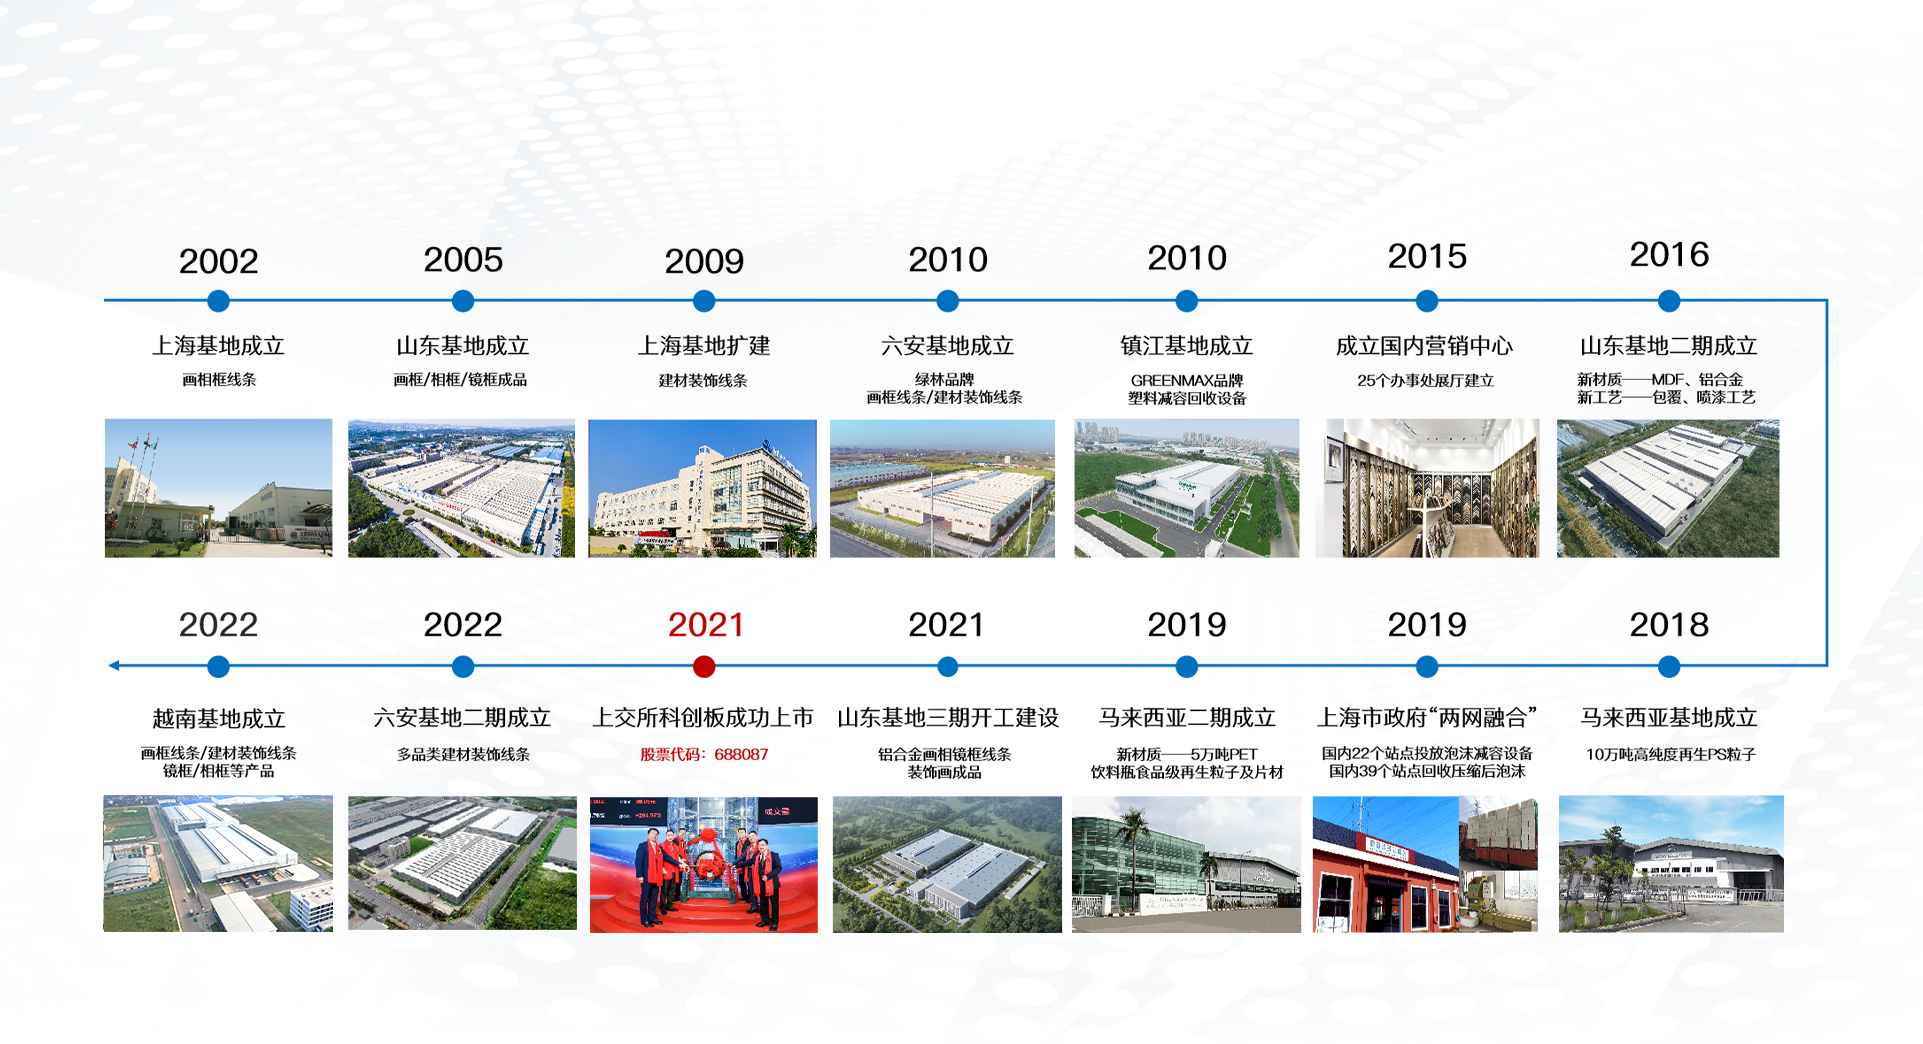 英科再生发展历程-2002年上海基地成立，2021年在上交所科创板成功上市